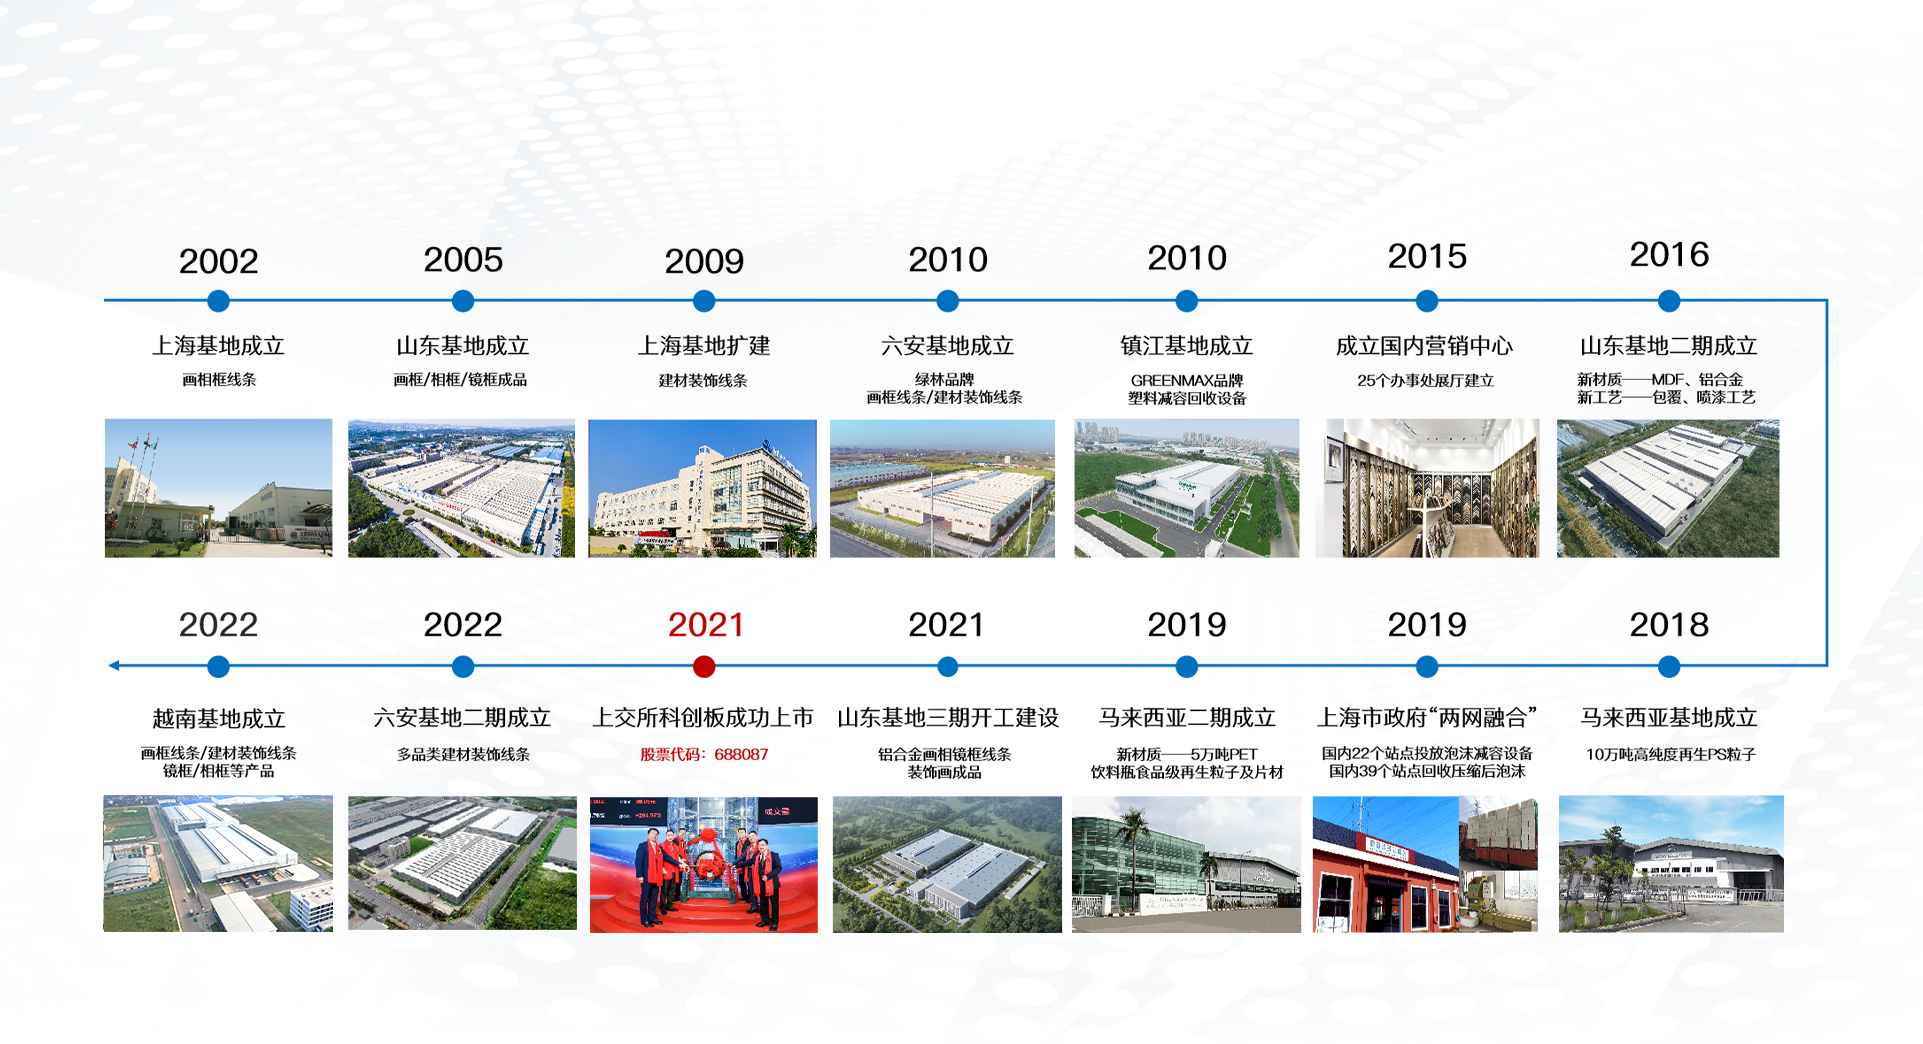 英科再生发展历程-2002年上海基地成立，2021年在上交所科创板成功上市